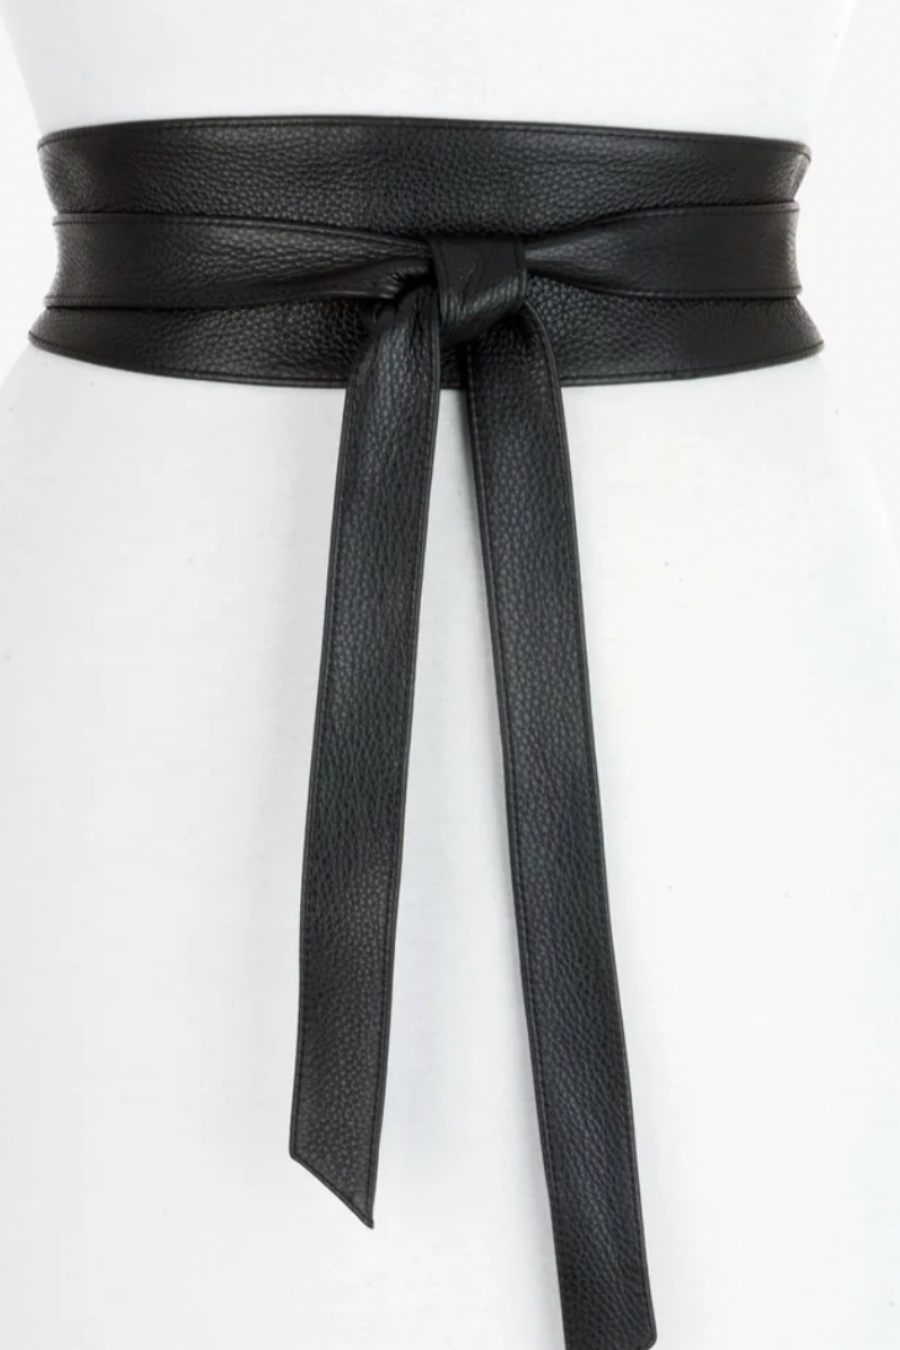 Nida Pebbled Obi Black Leather Belt